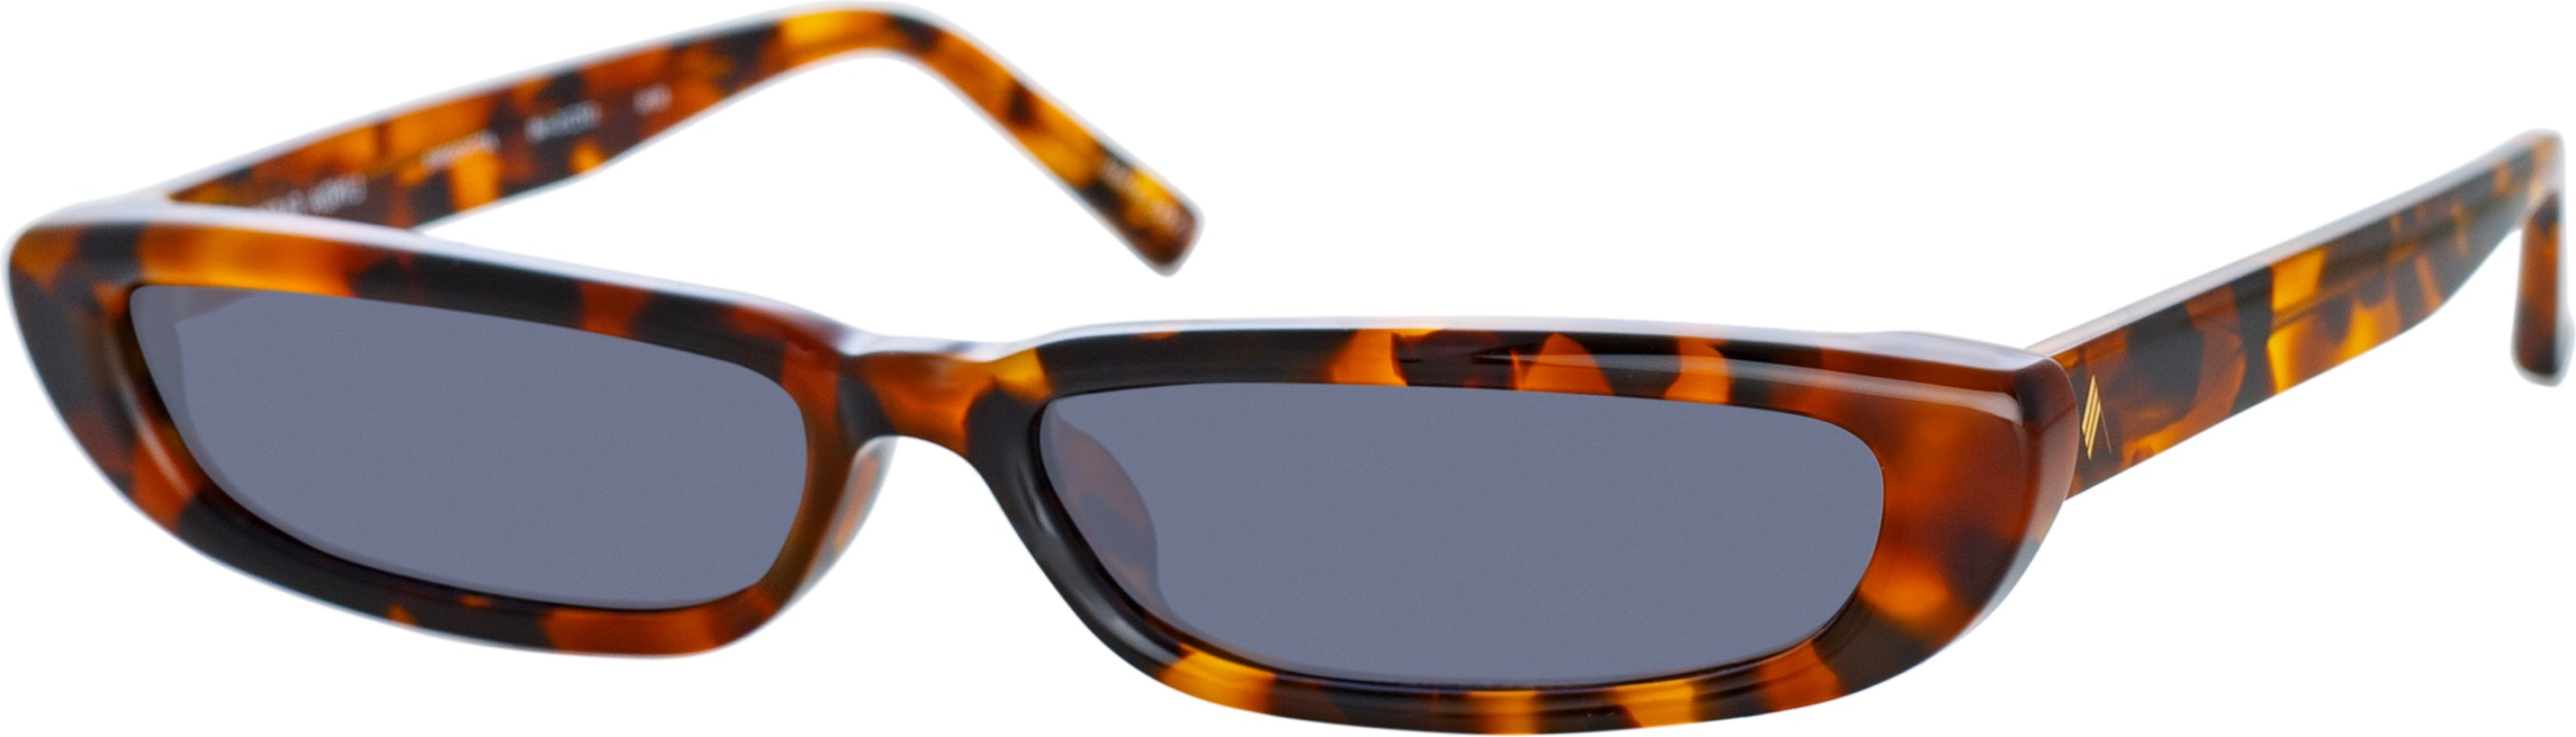 Color_ATTICO39C2SUN - The Attico Thea Angular Sunglasses in Tortoiseshell